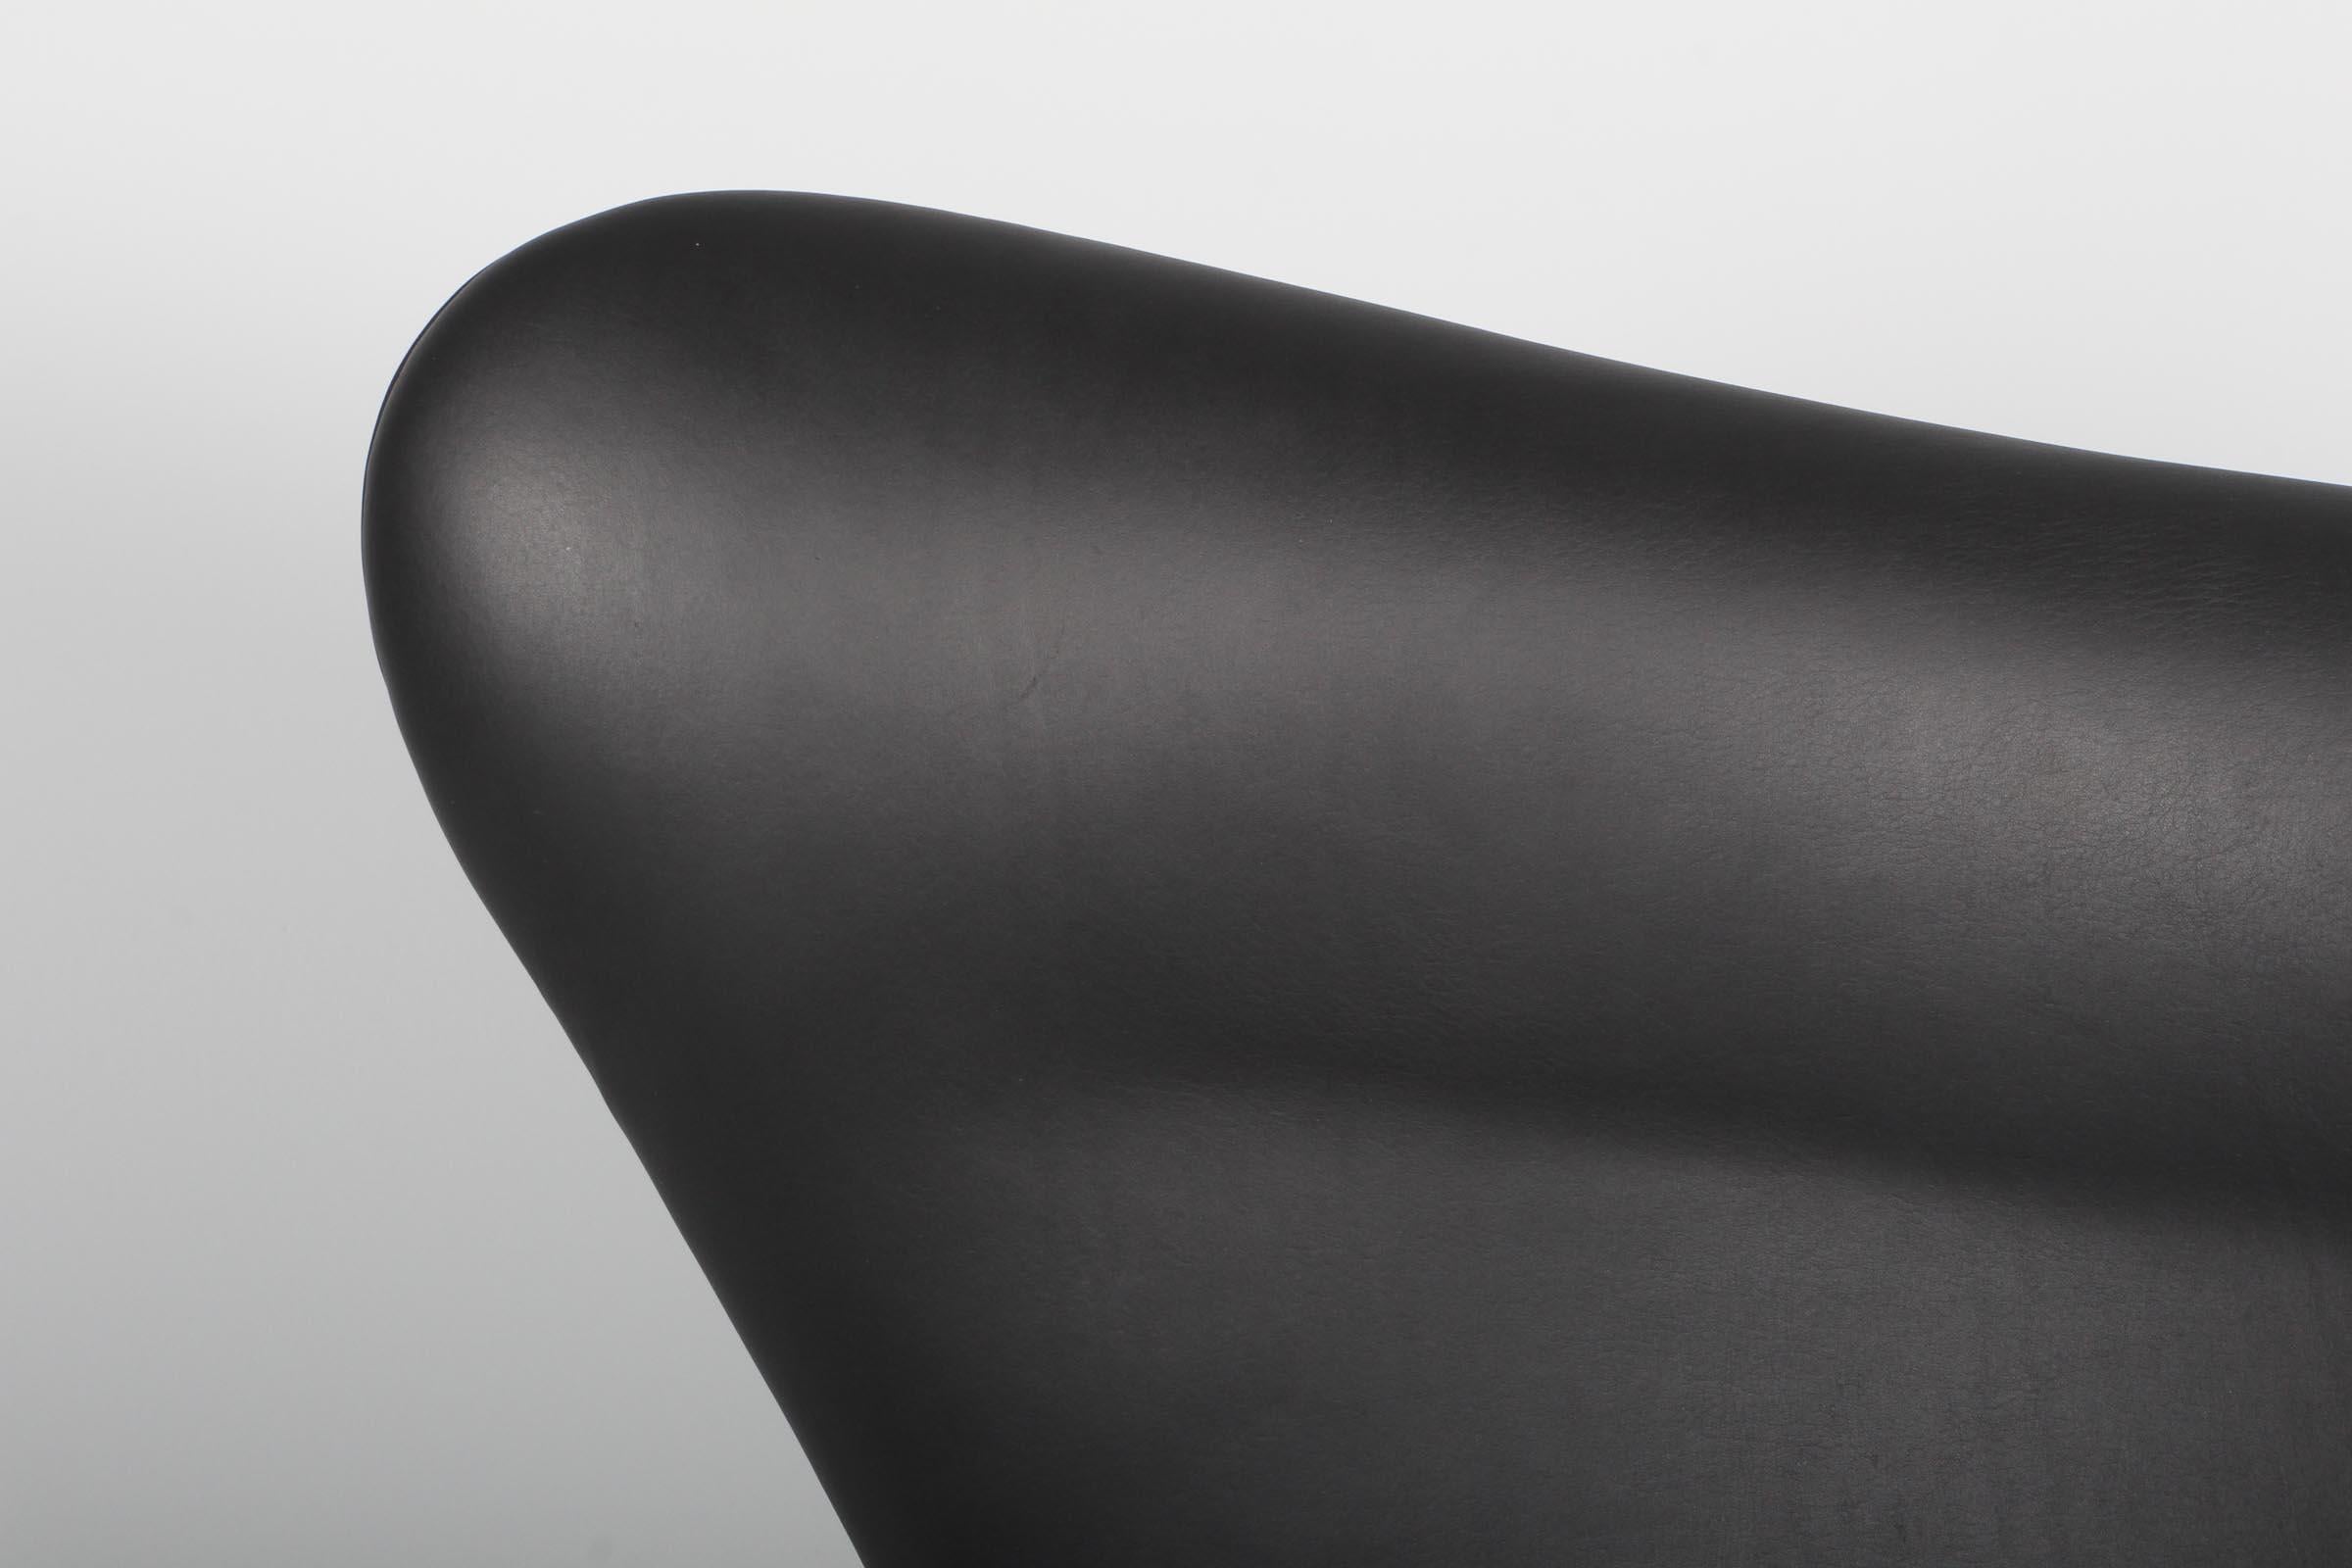 Nouvel ensemble de chaises longues Arne Jacobsen modèle Egg. Nouvelle sellerie en cuir aniline noir Dakar.

Base quatre étoiles avec fonction d'inclinaison.

Fabriqué par Fritz Hansen.

Cette chaise iconique est l'une des plus célèbres au